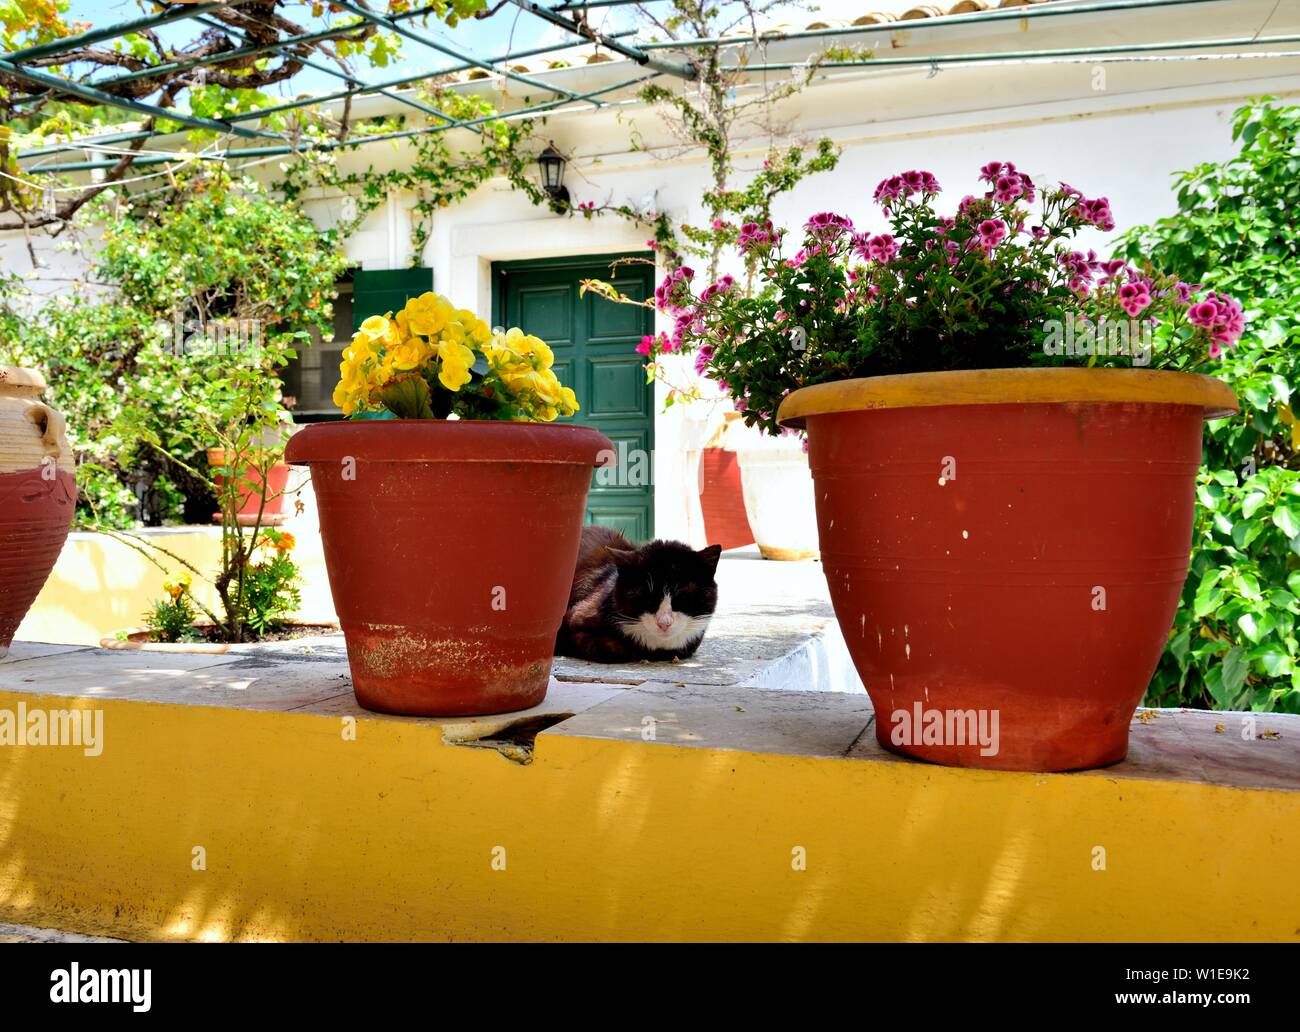 Un chat domestique ,la sieste chat parmi les pots de fleurs,Theotokos Monastère, Monastère de Paleokastritsa, Corfou, Grèce Banque D'Images